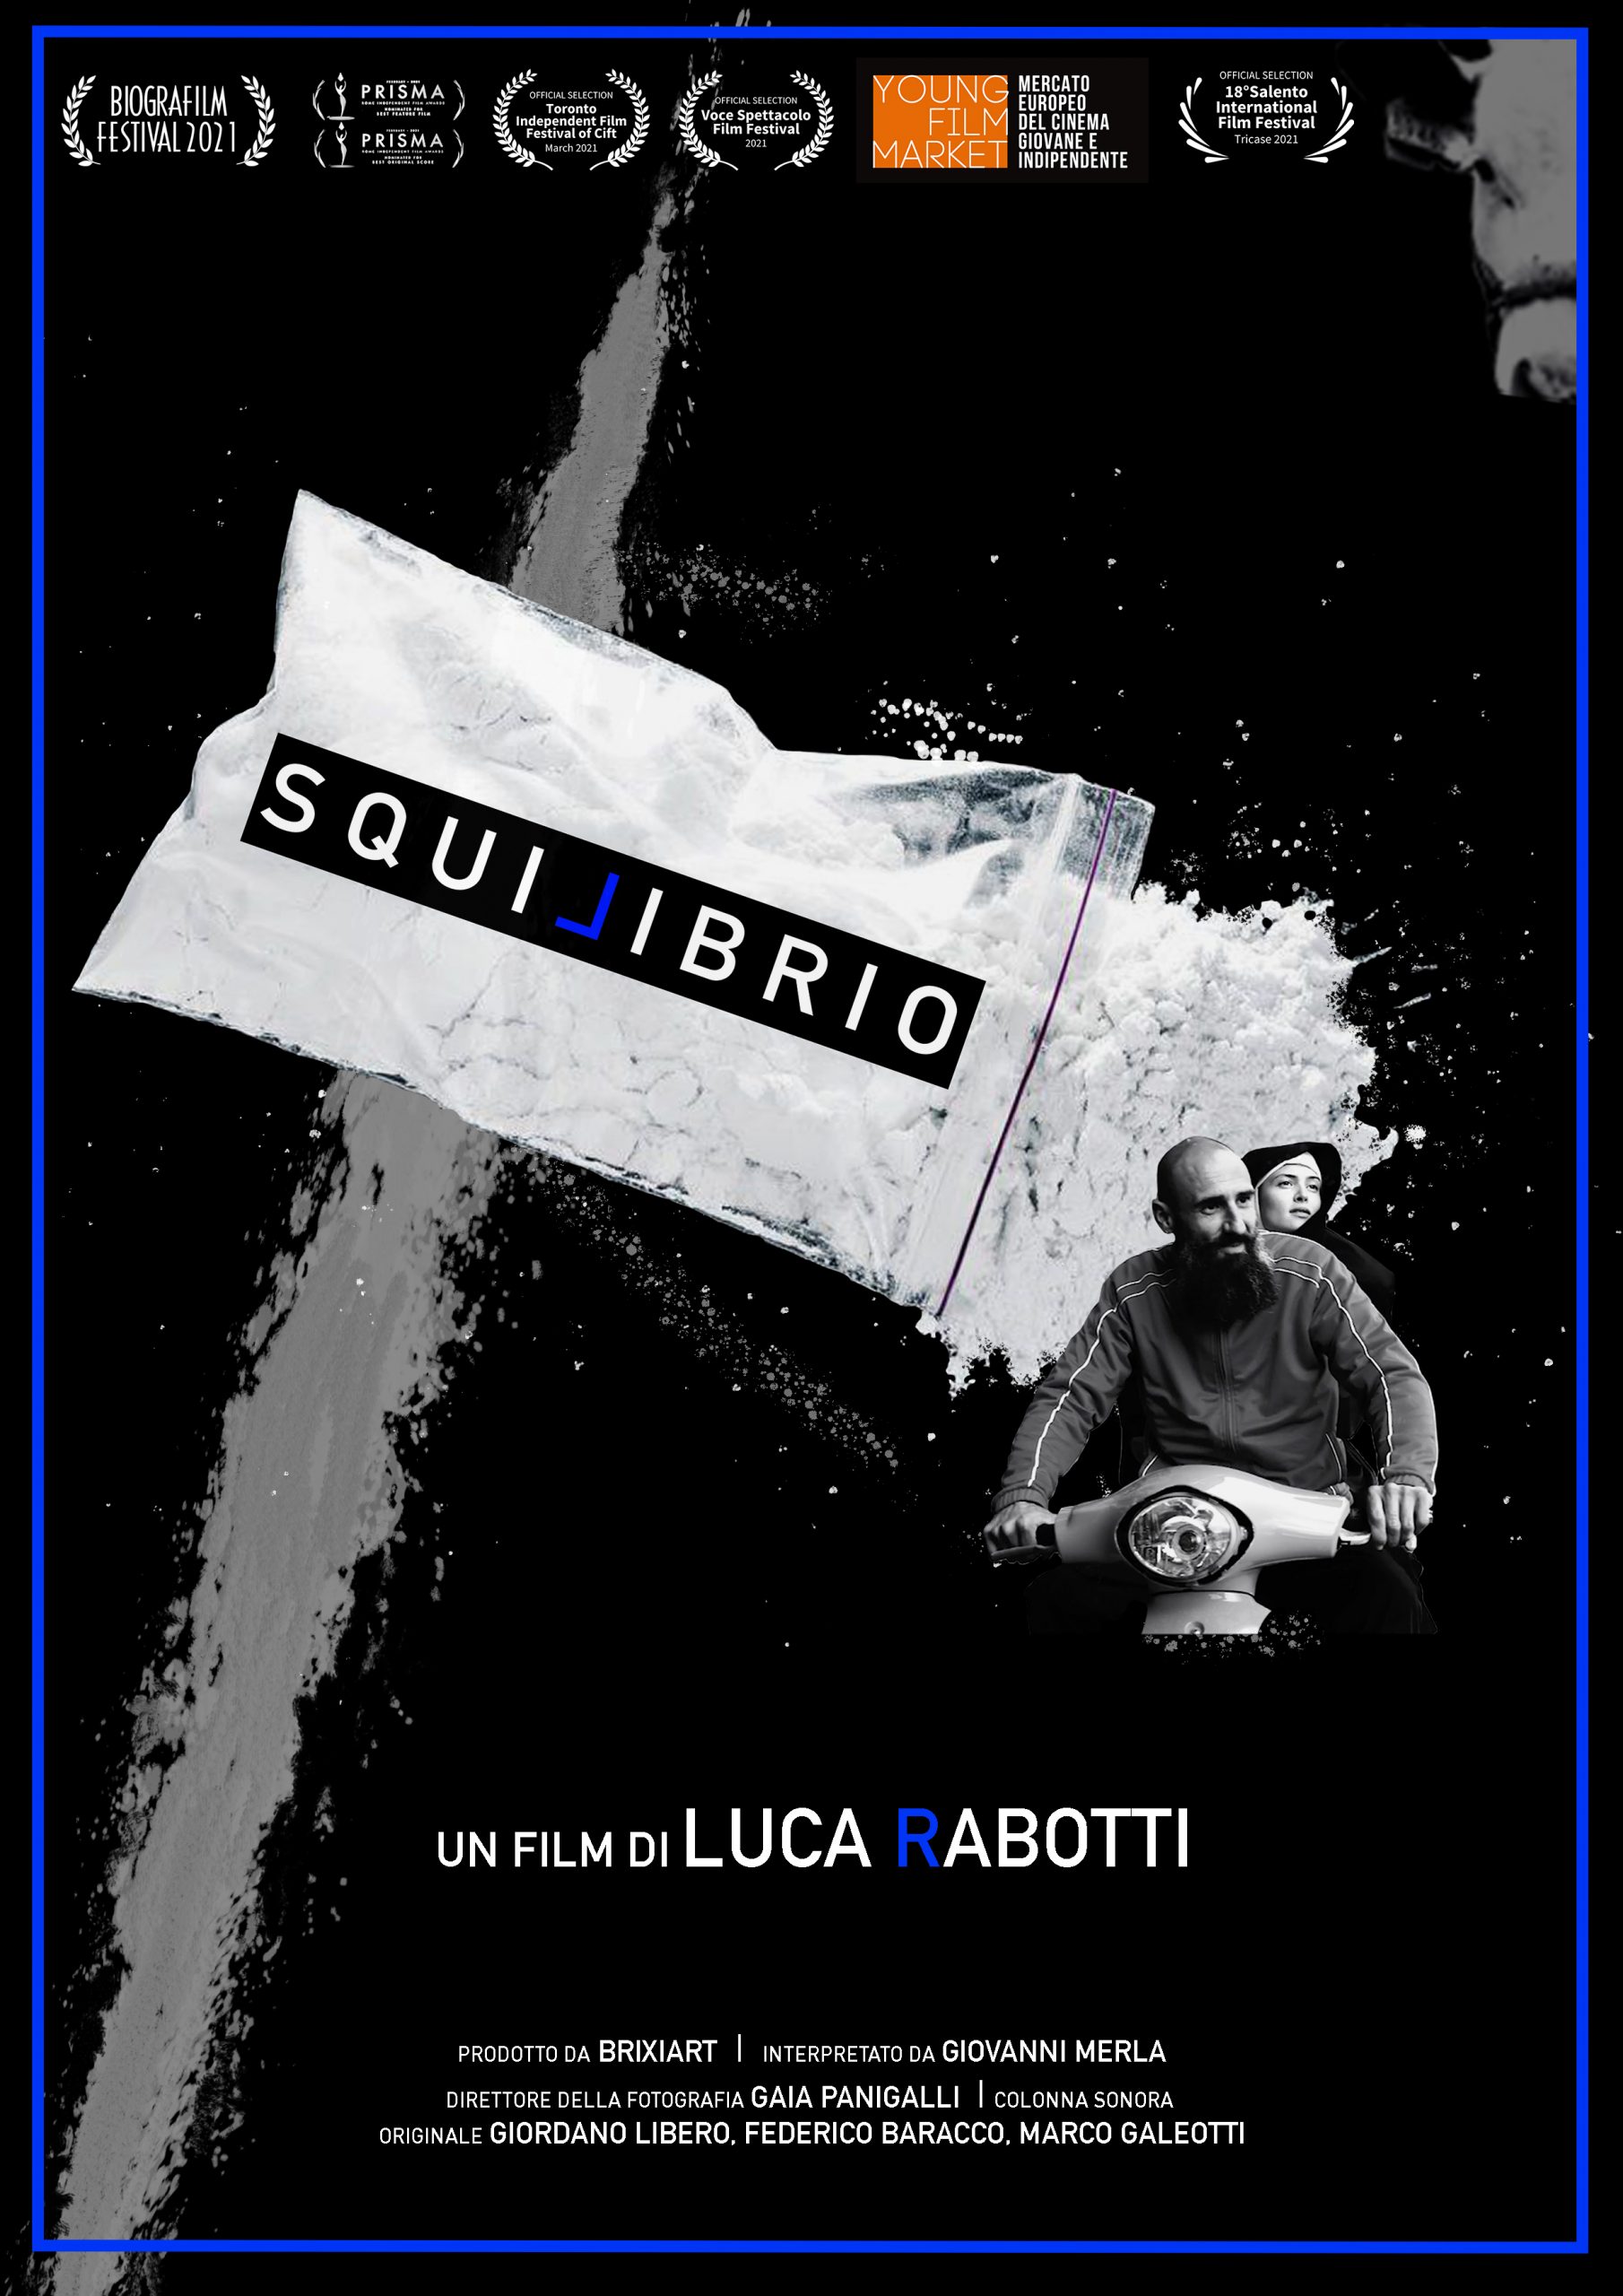 SQUILIBRIO, il primo lungometraggio firmato da Luca Rabotti